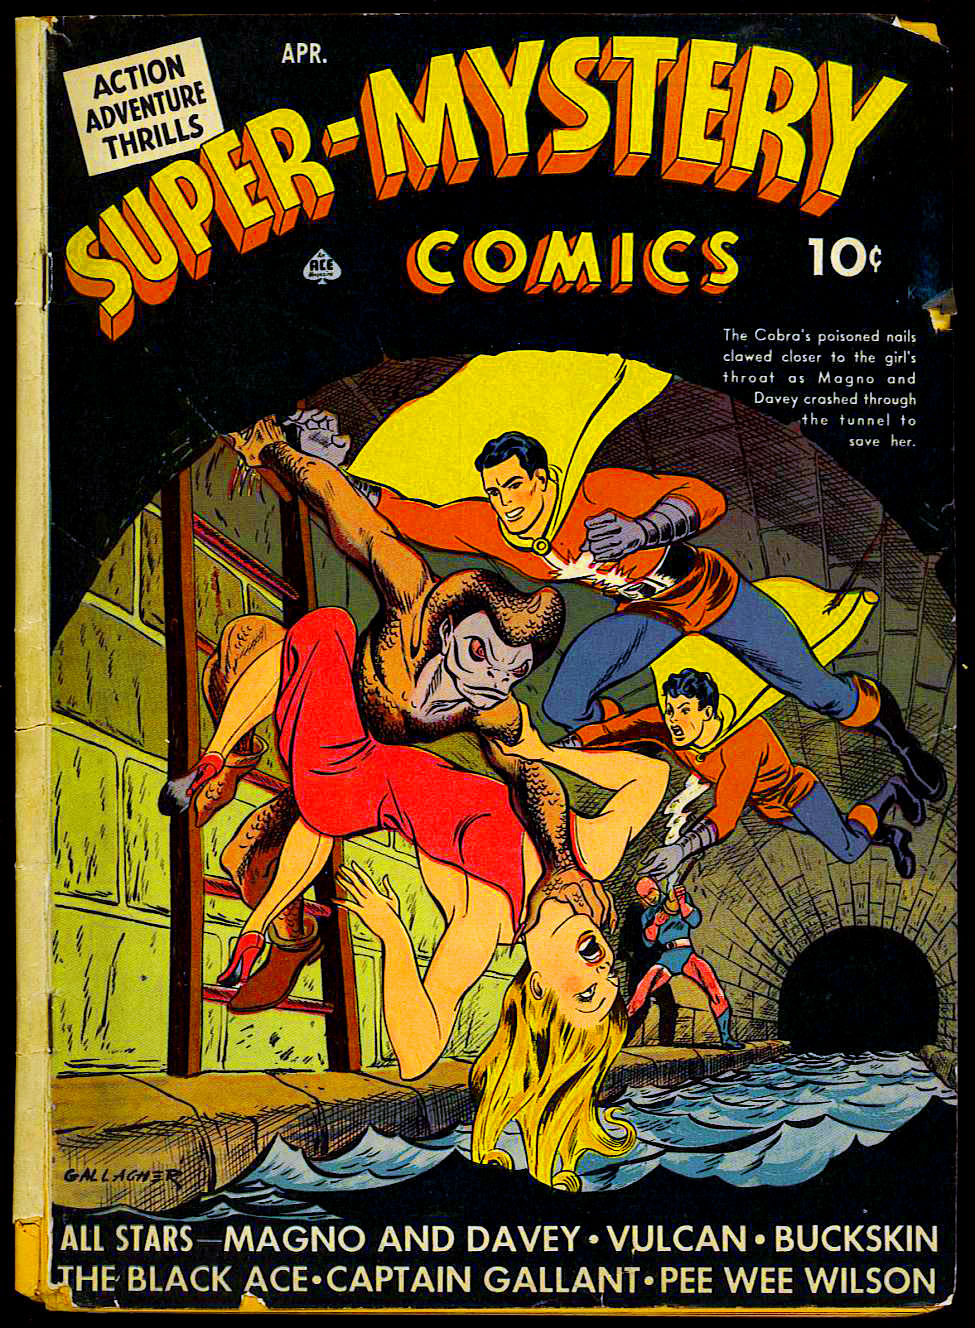 Super Mystery Comics v3 #1 by Ace